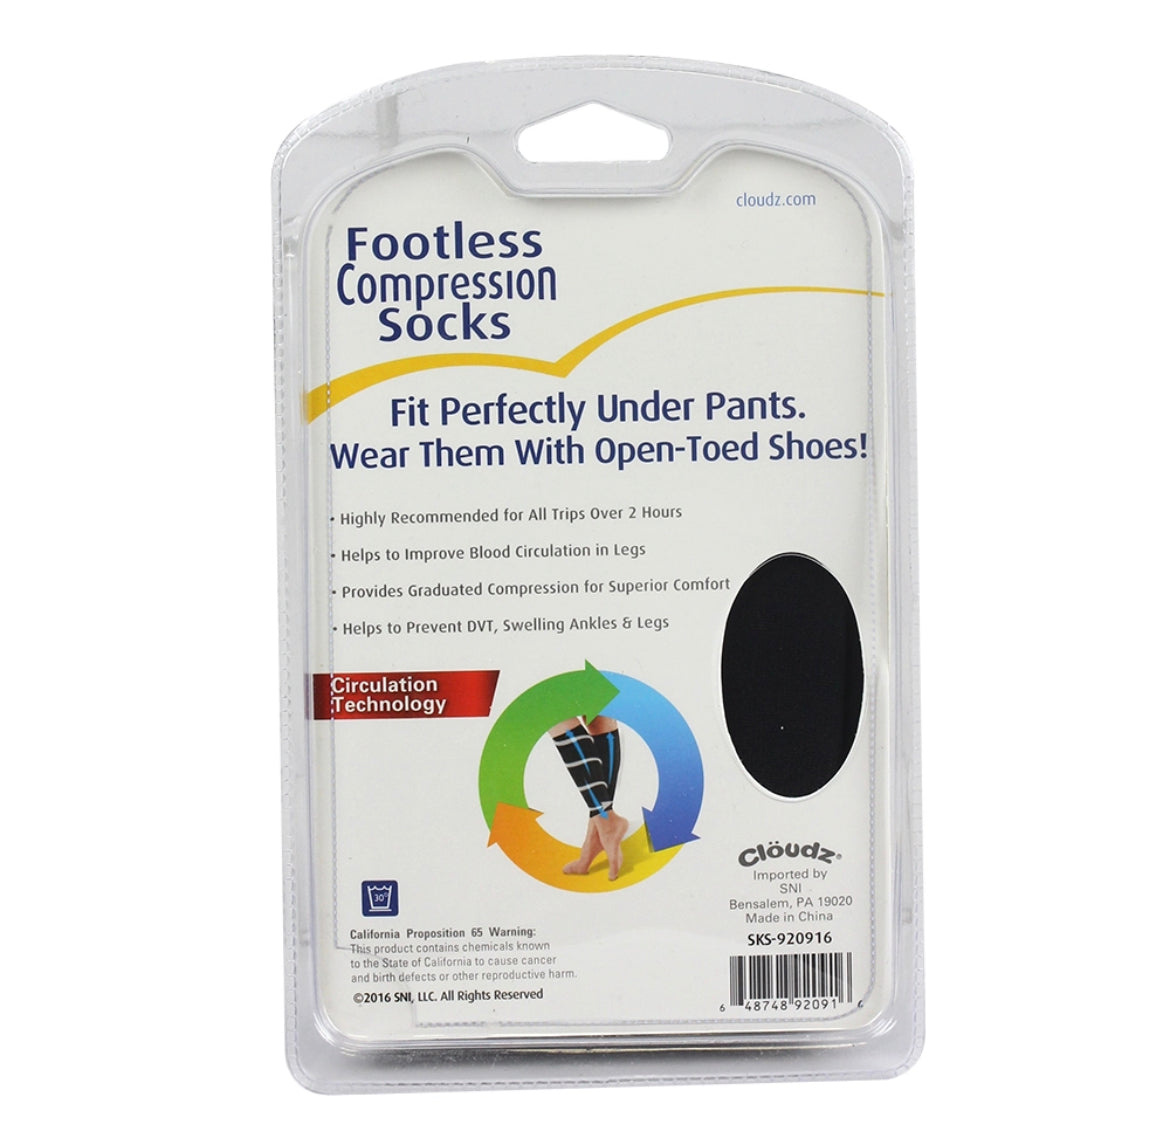 Cloudz Footless Compression Socks- Size L/XL - Black